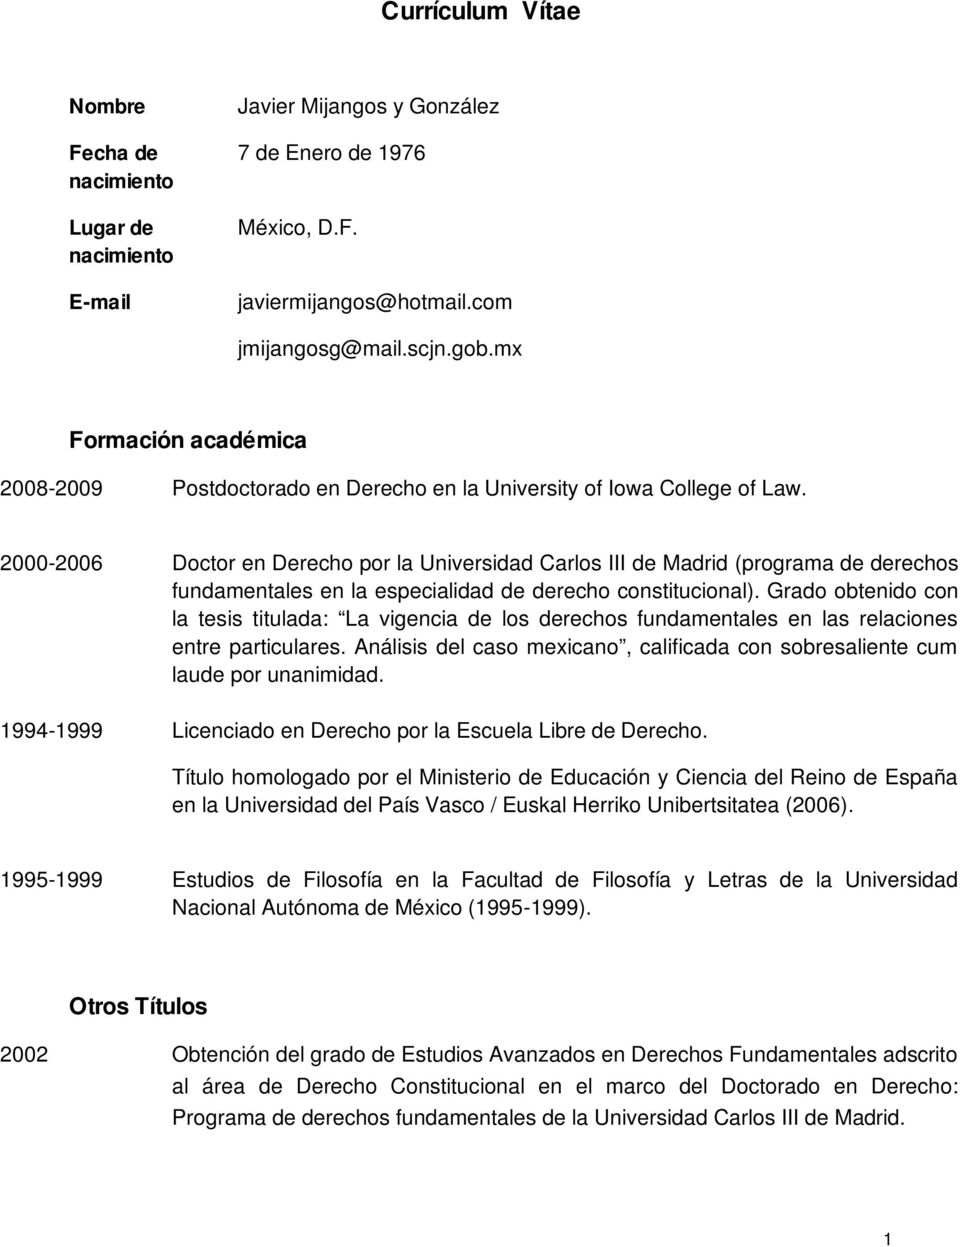 2000-2006 Doctor en Derecho por la Universidad Carlos III de Madrid (programa de derechos fundamentales en la especialidad de derecho constitucional).